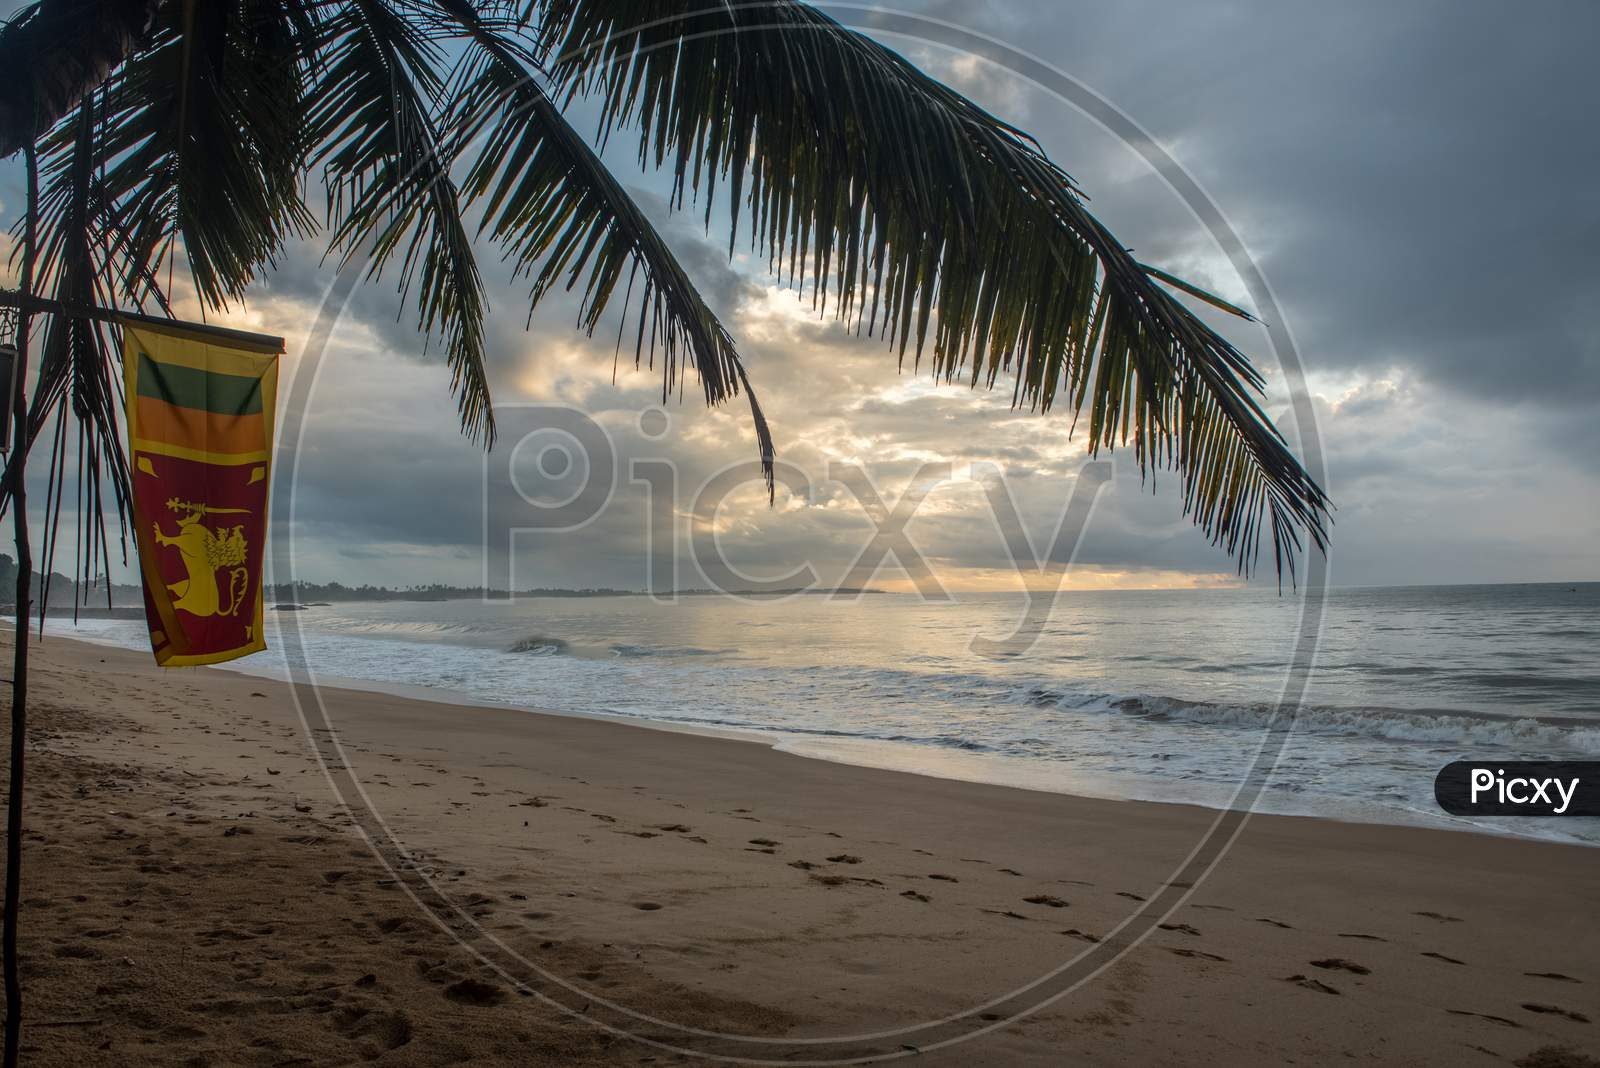 Tangalle, Sri Lanka : 2020 Nov 25 : Flag Of  In The Sunset In The Beach Of Tangalle, Sri Lanka.